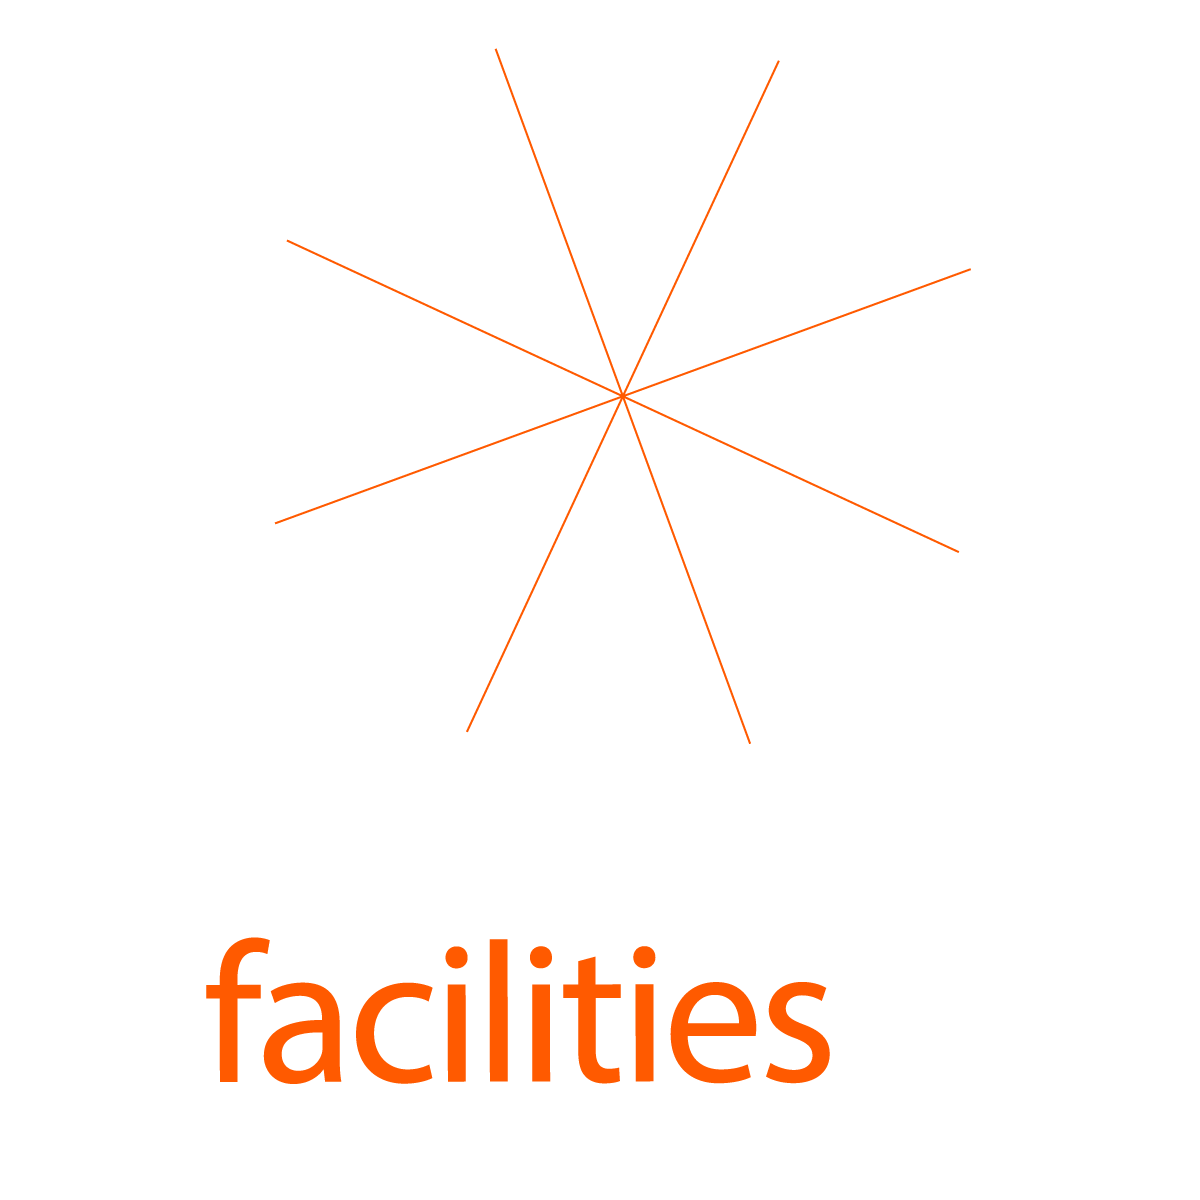 Consuman facilities, Consuman fleets, Consuman services, Consuman industries, Consuman constructors, Consuman government, Consuman health, Consuman hotels